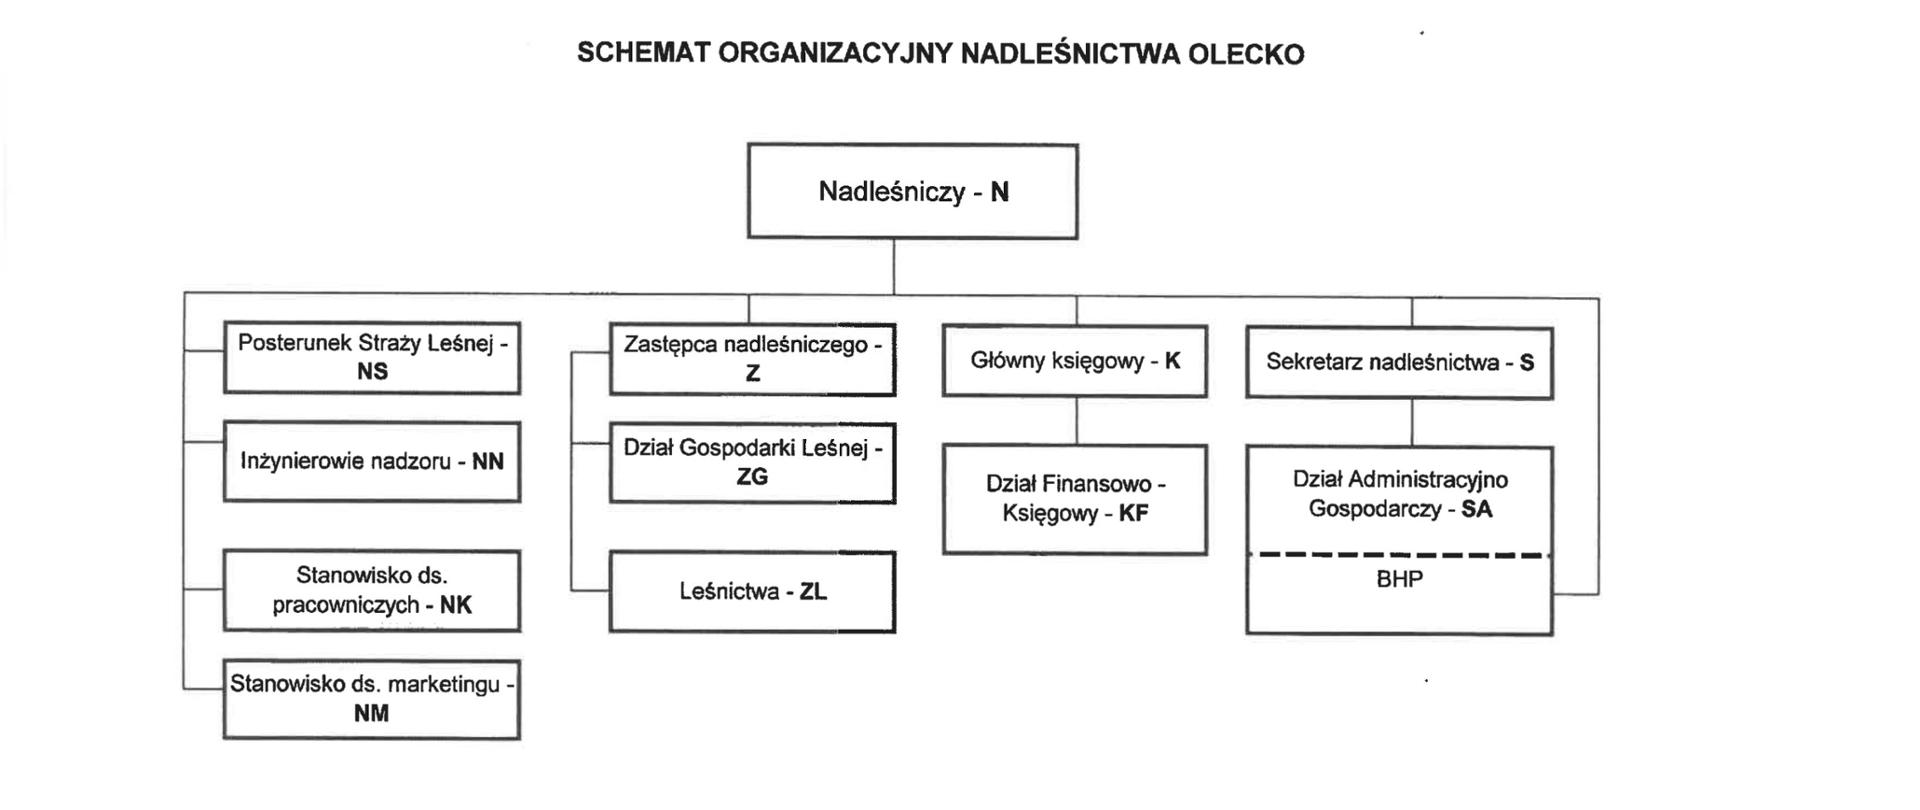 Zdjęcie przedstawia schemat organizacyjny Nadleśnictwa Olecko